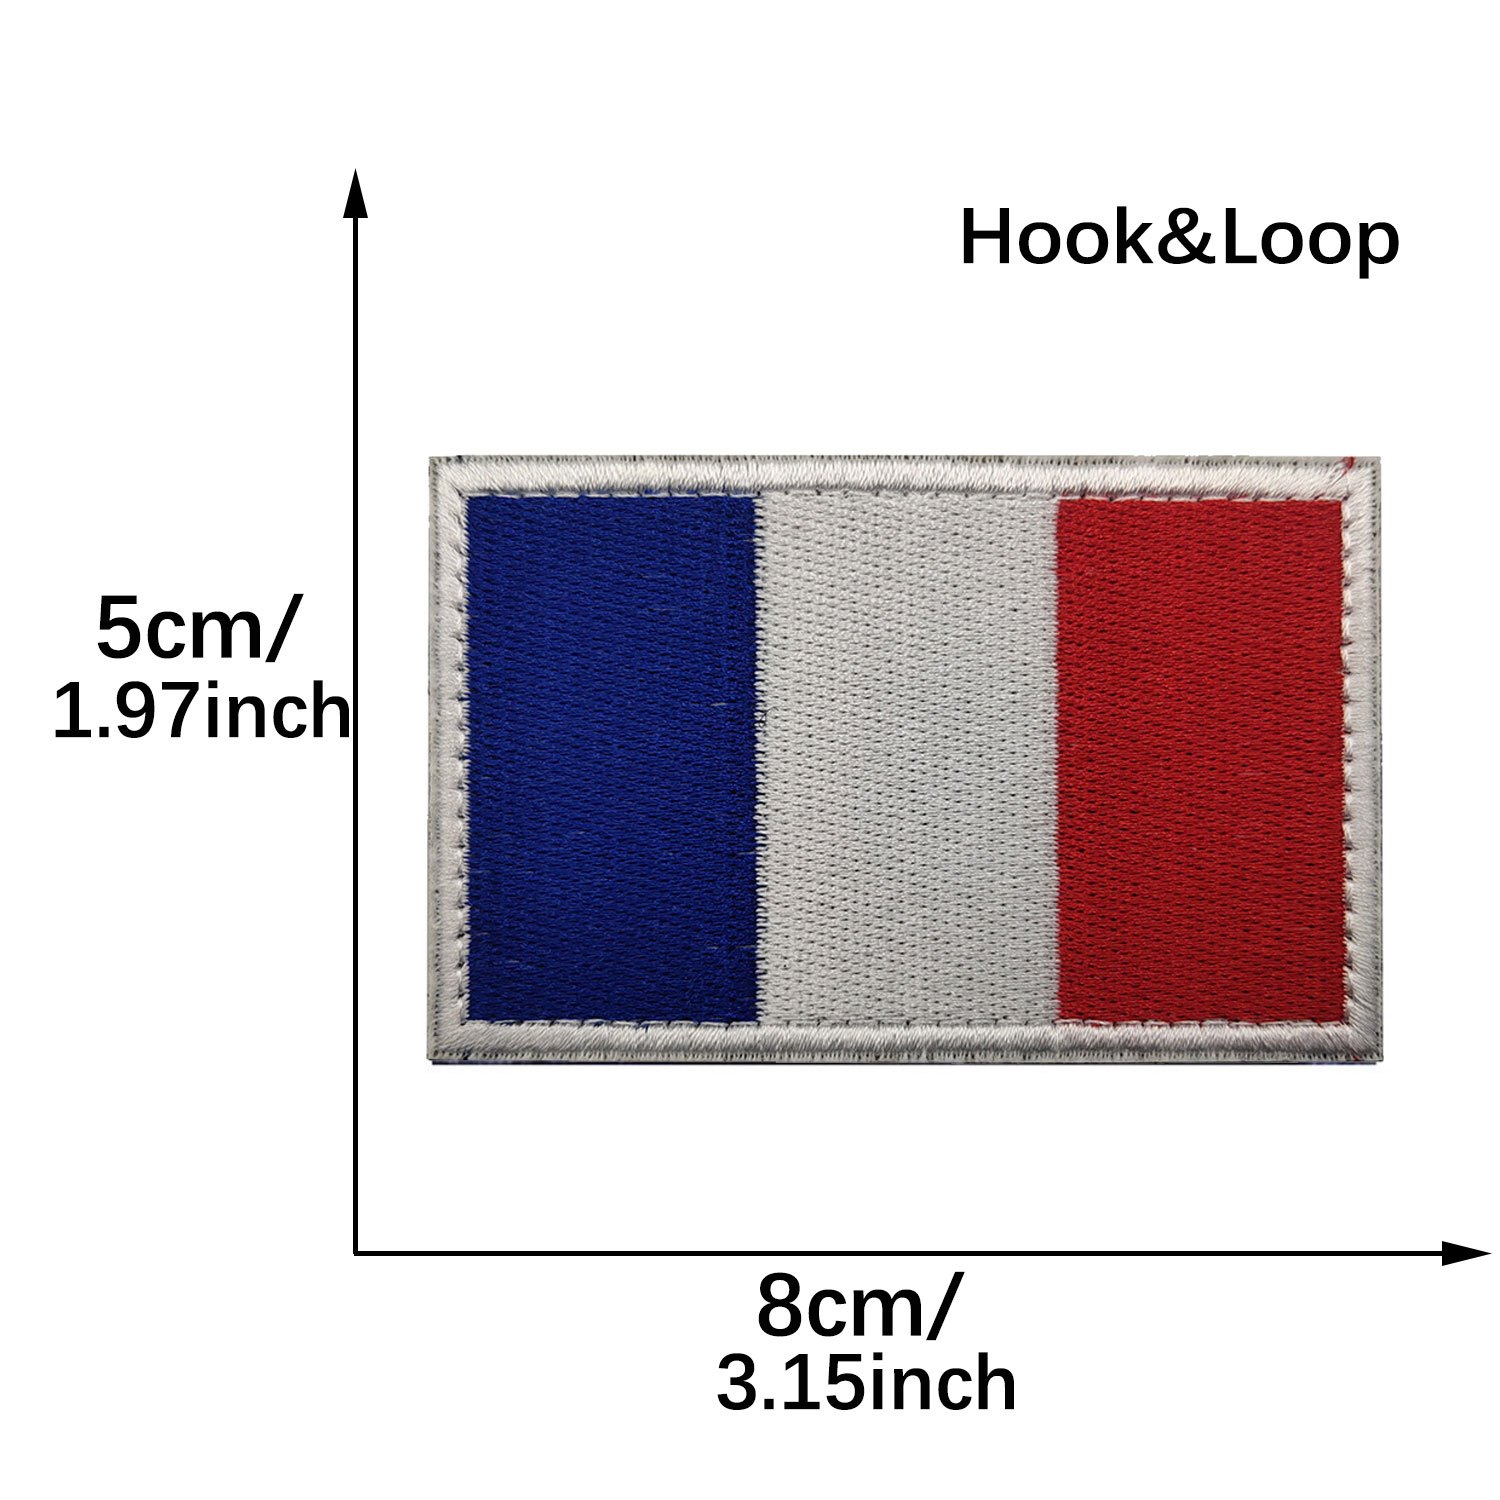 Bouclier drapeau de l'armée française, Badge militaire tactique français,  patchs brodés à crochets et boucles